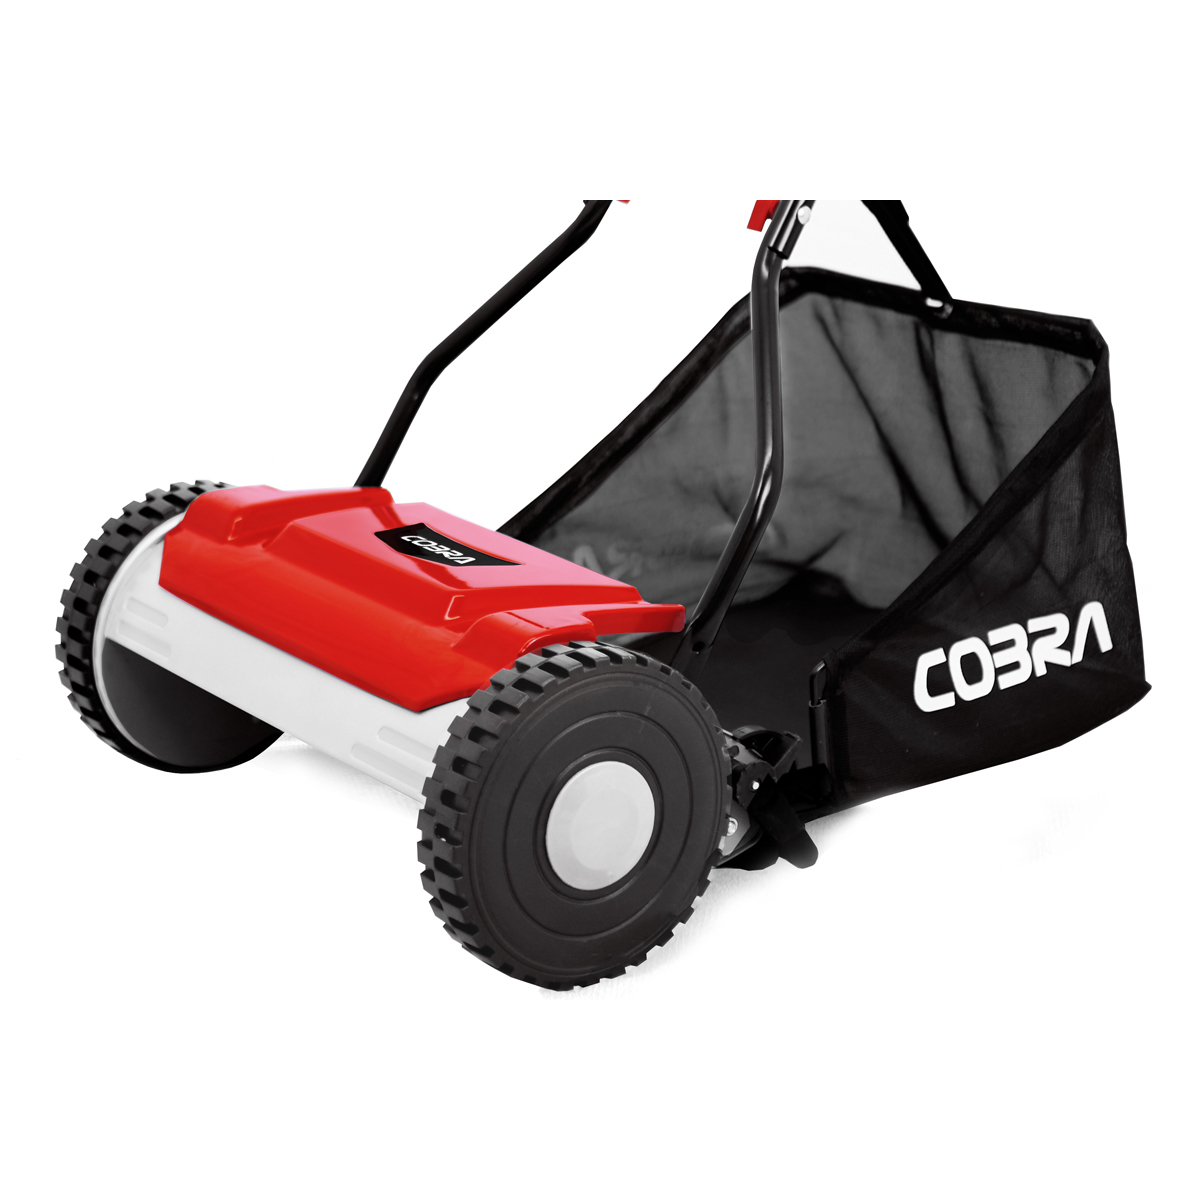 Haalbaarheid Tegenstander vijandigheid Een Cobra HM381 grasmaaier kopen? Milati Grass Machines